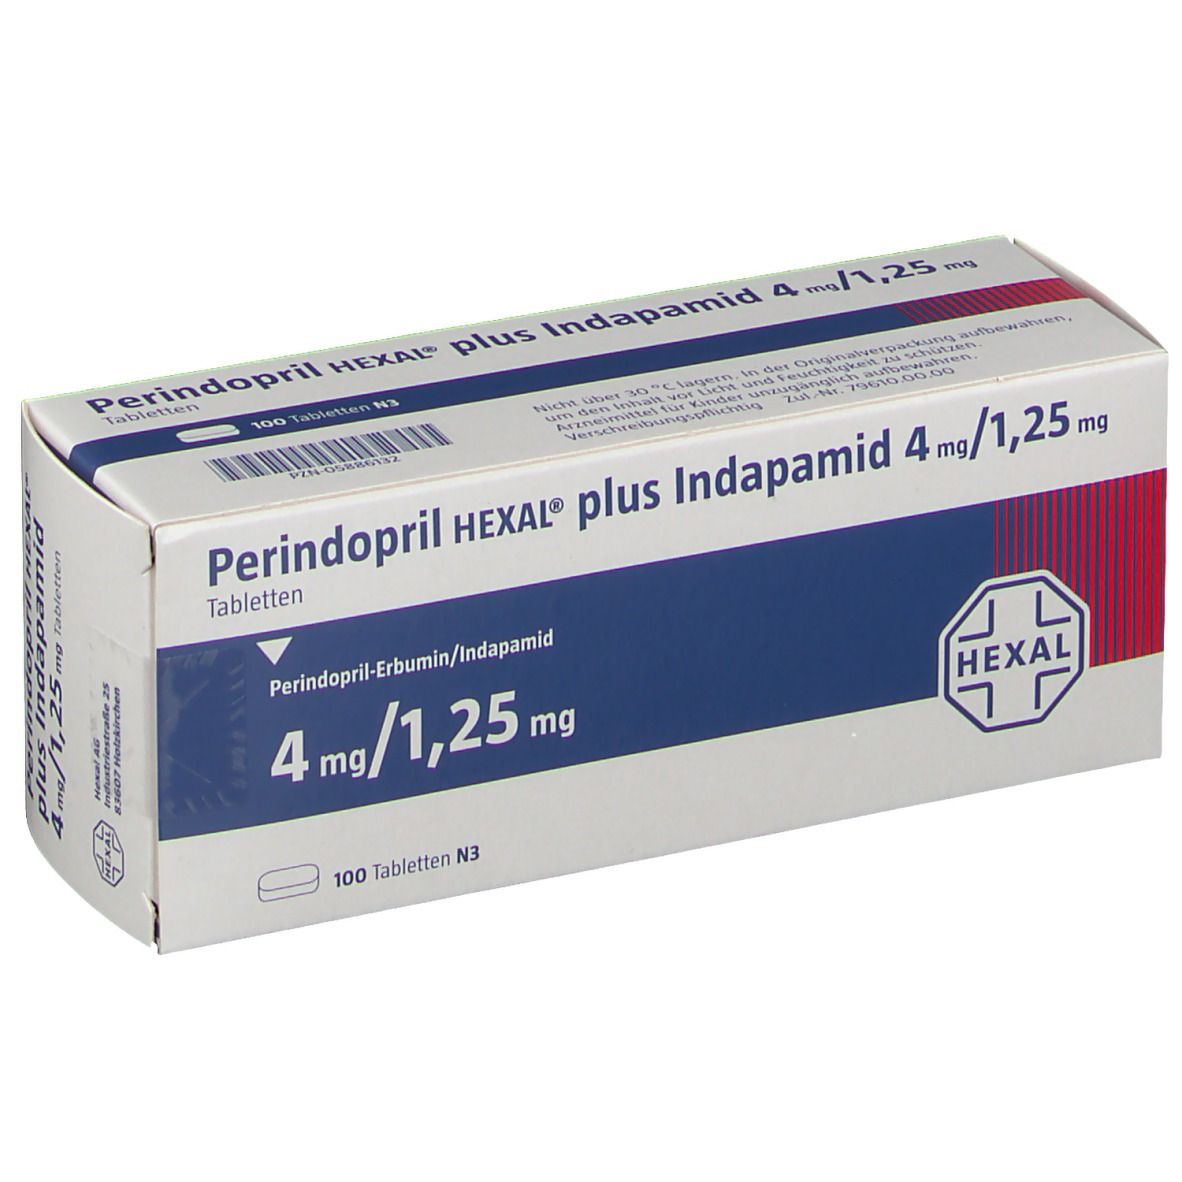 Perindopril HEXAL® plus Indapamid 4 mg/1,25 mg